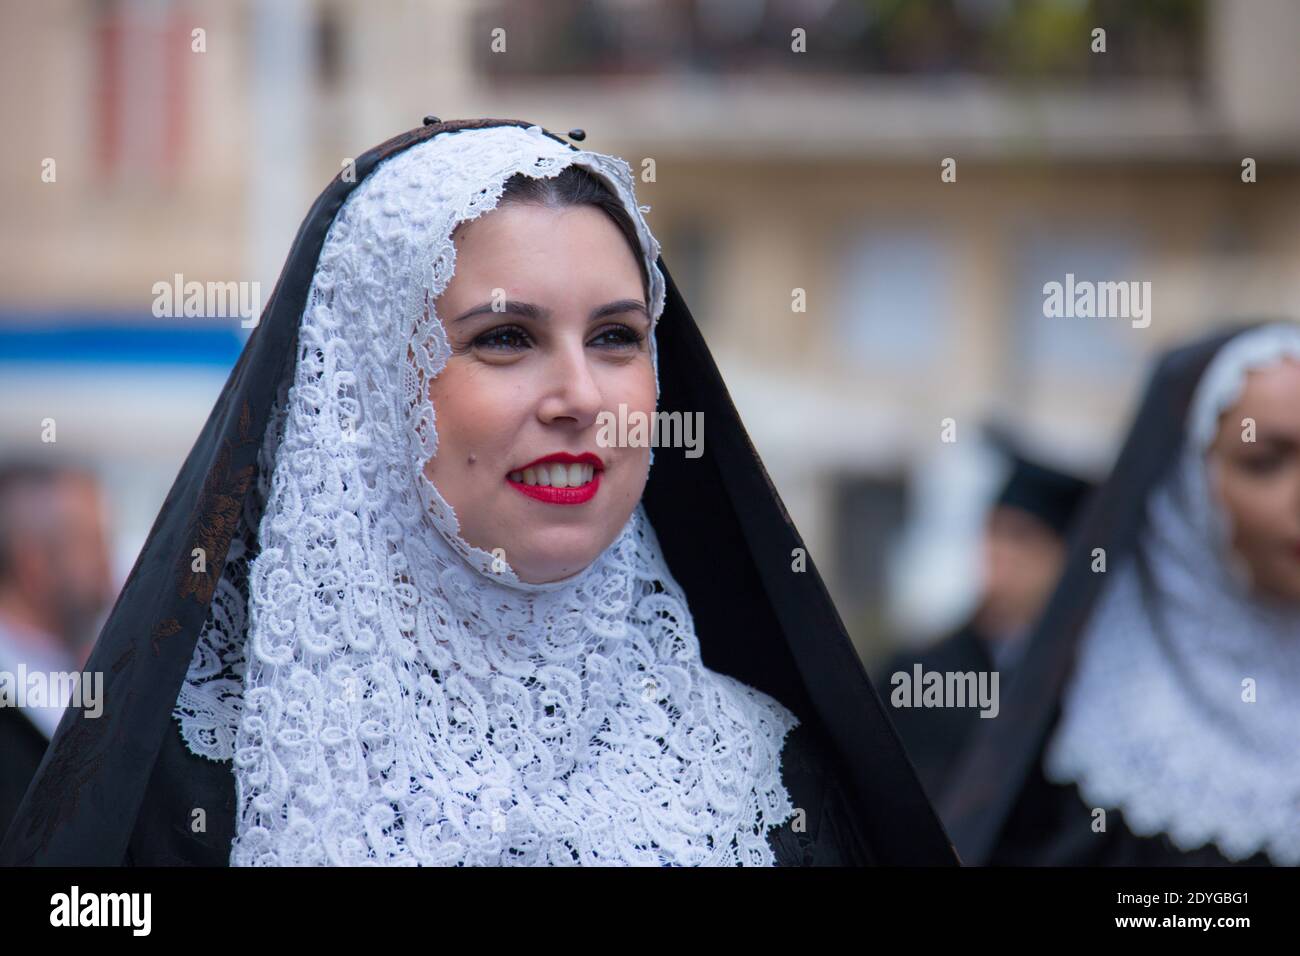 SASSARI, ITALY - May 19th, 2019- Sardinian cavalcade, traditional Sardinian clothes, Tempio Pausanian dress Stock Photo